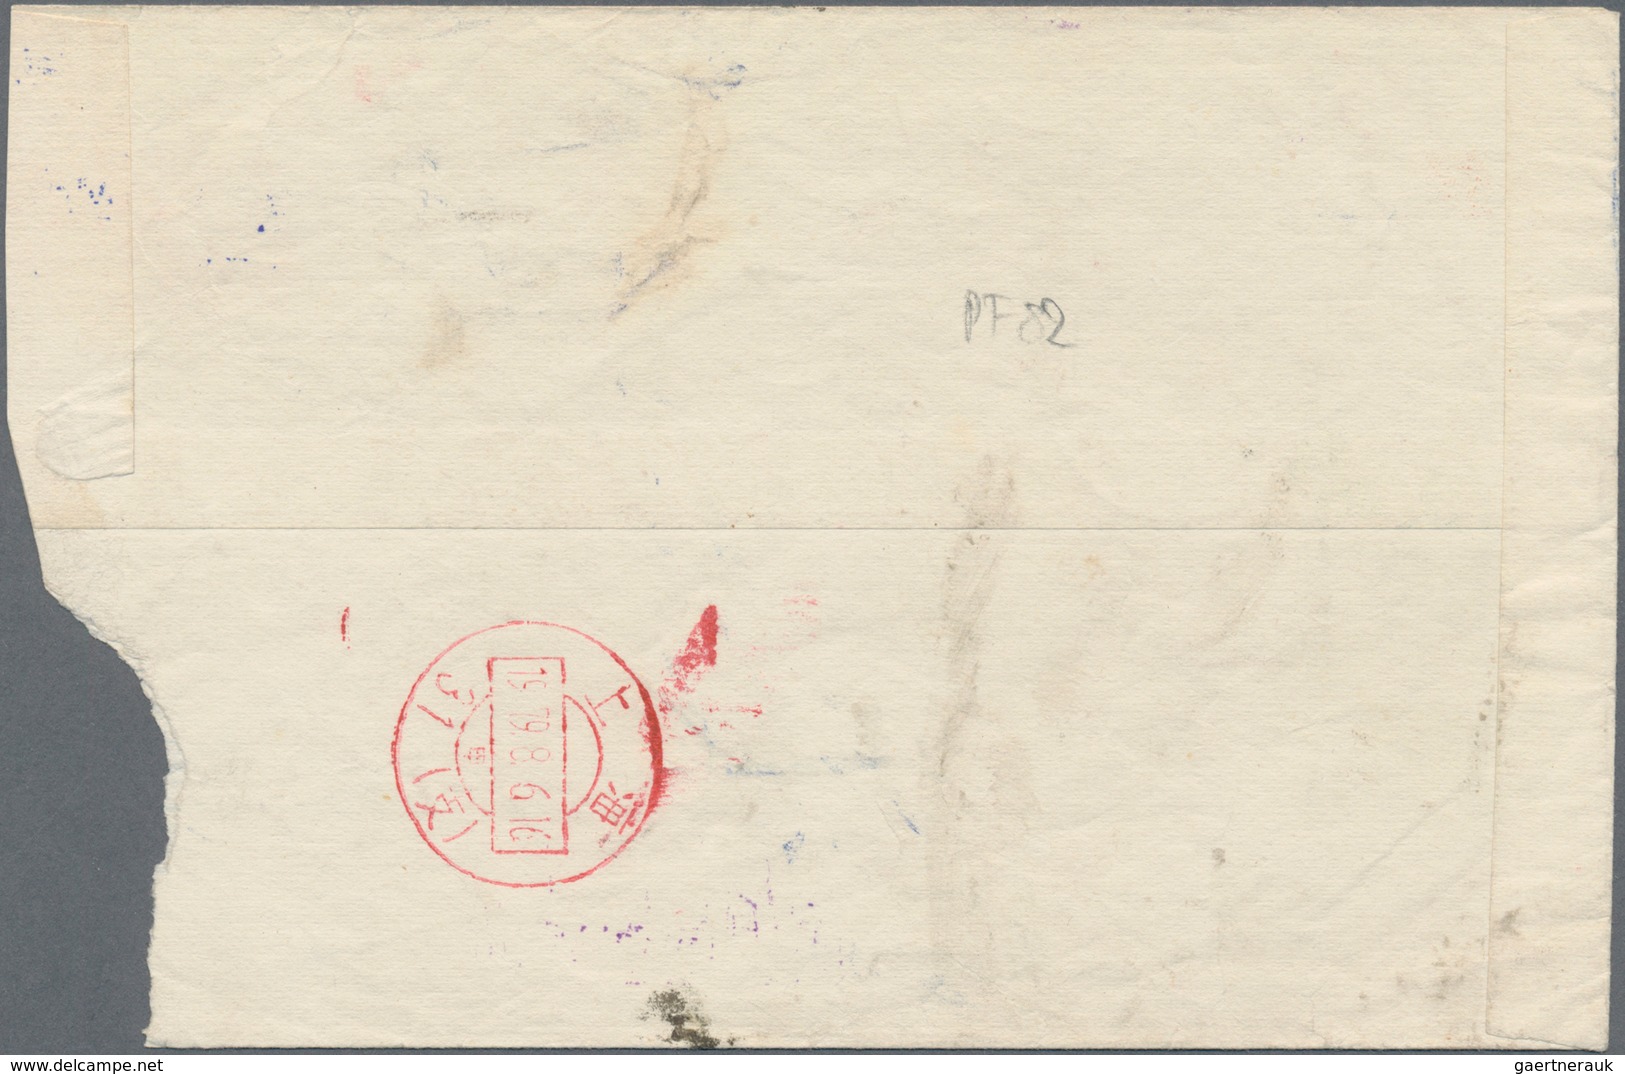 China - Volksrepublik - Ganzsachen: 1970/73, "paper Cut" Envelopes 10 F. Carmine: Used As Postal Ser - Postcards